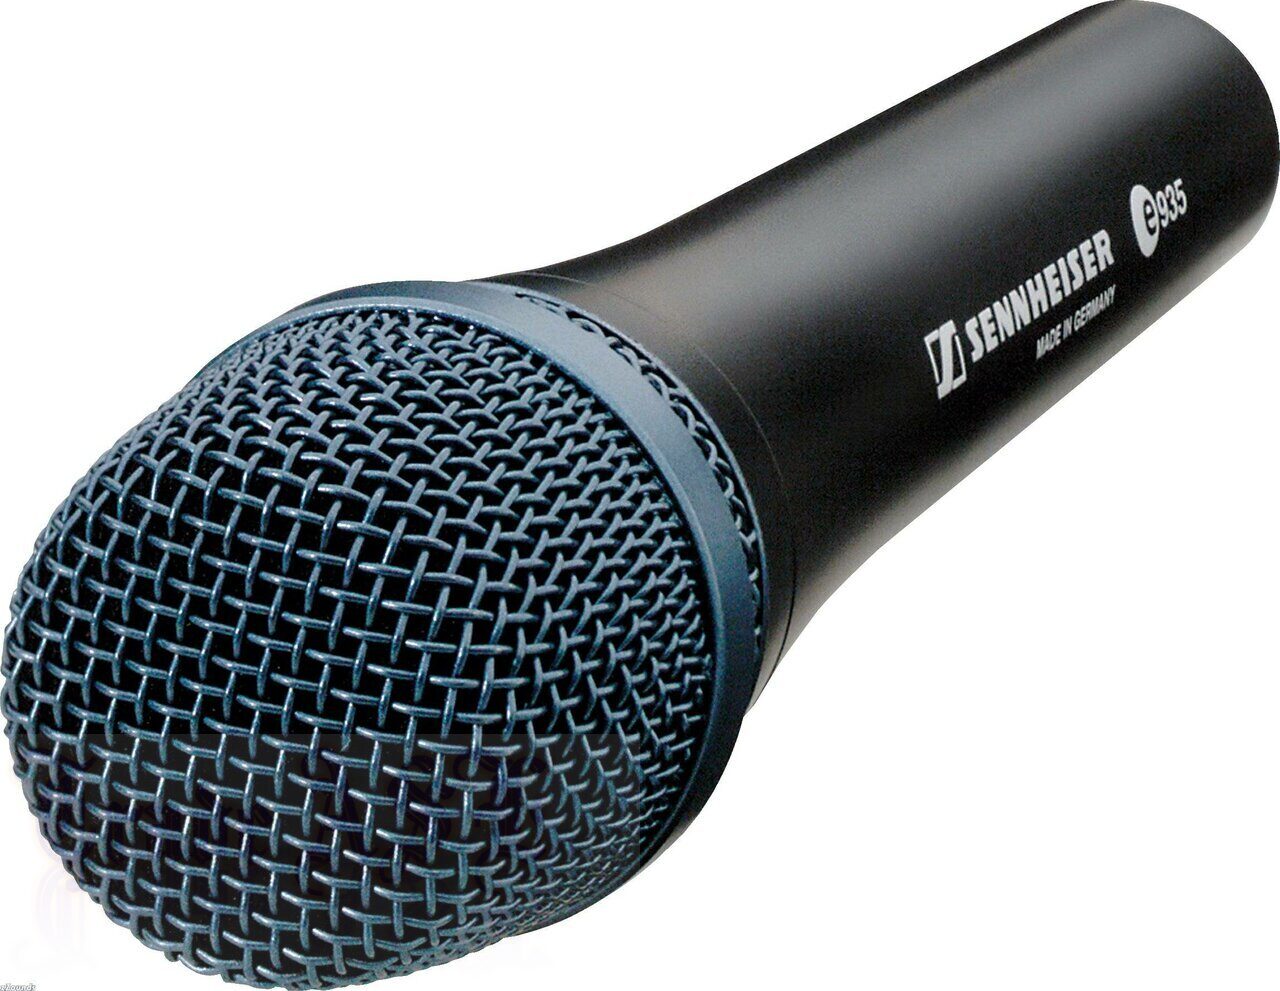 Sennheiser E 935, Кардиоидный вокальный микрофон